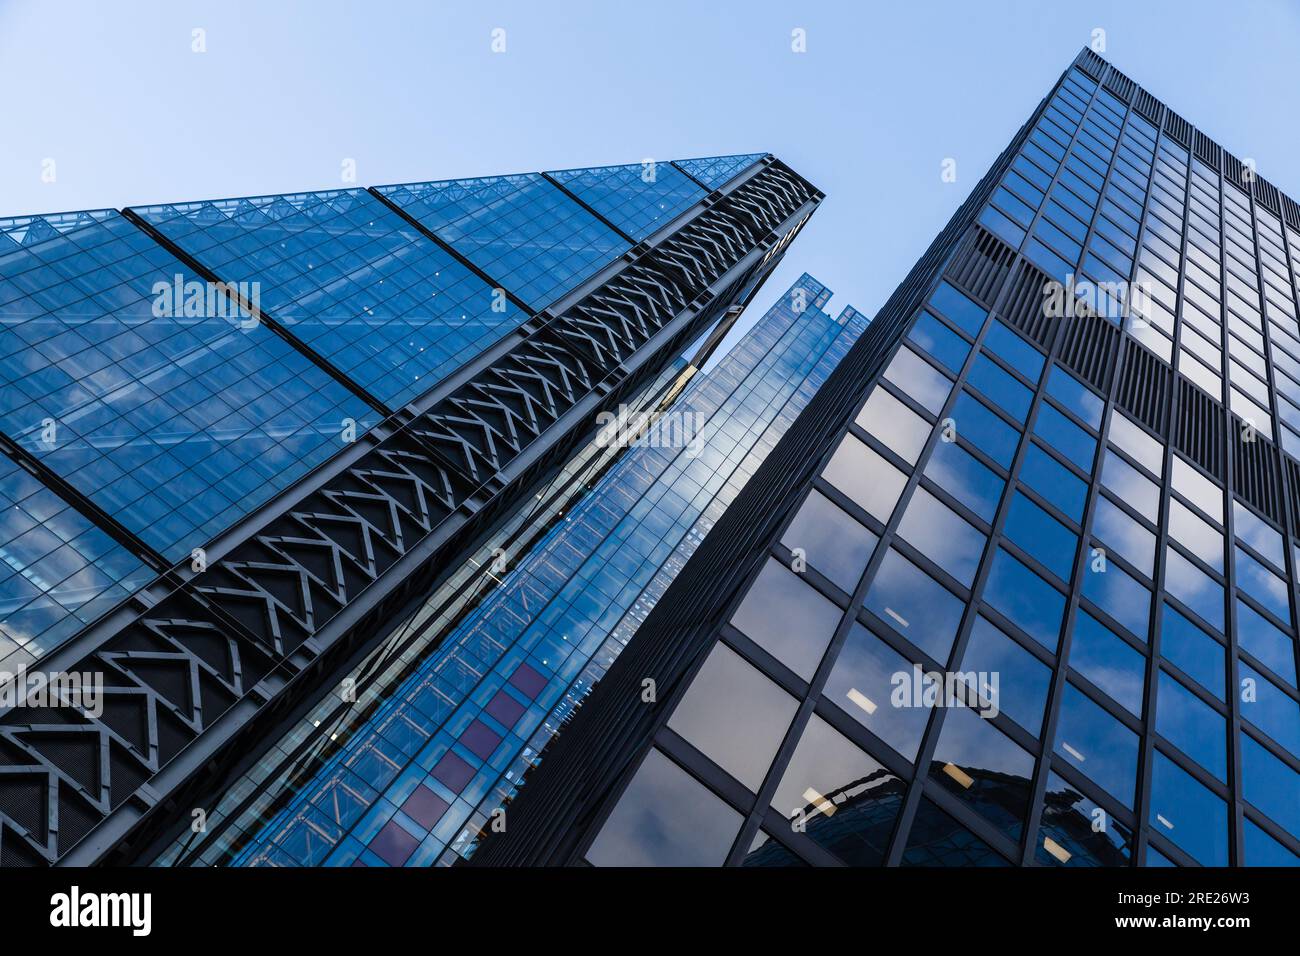 London, UK - April 25, 2019: London city skyline modern skyscrapers under clear blue sky Stock Photo